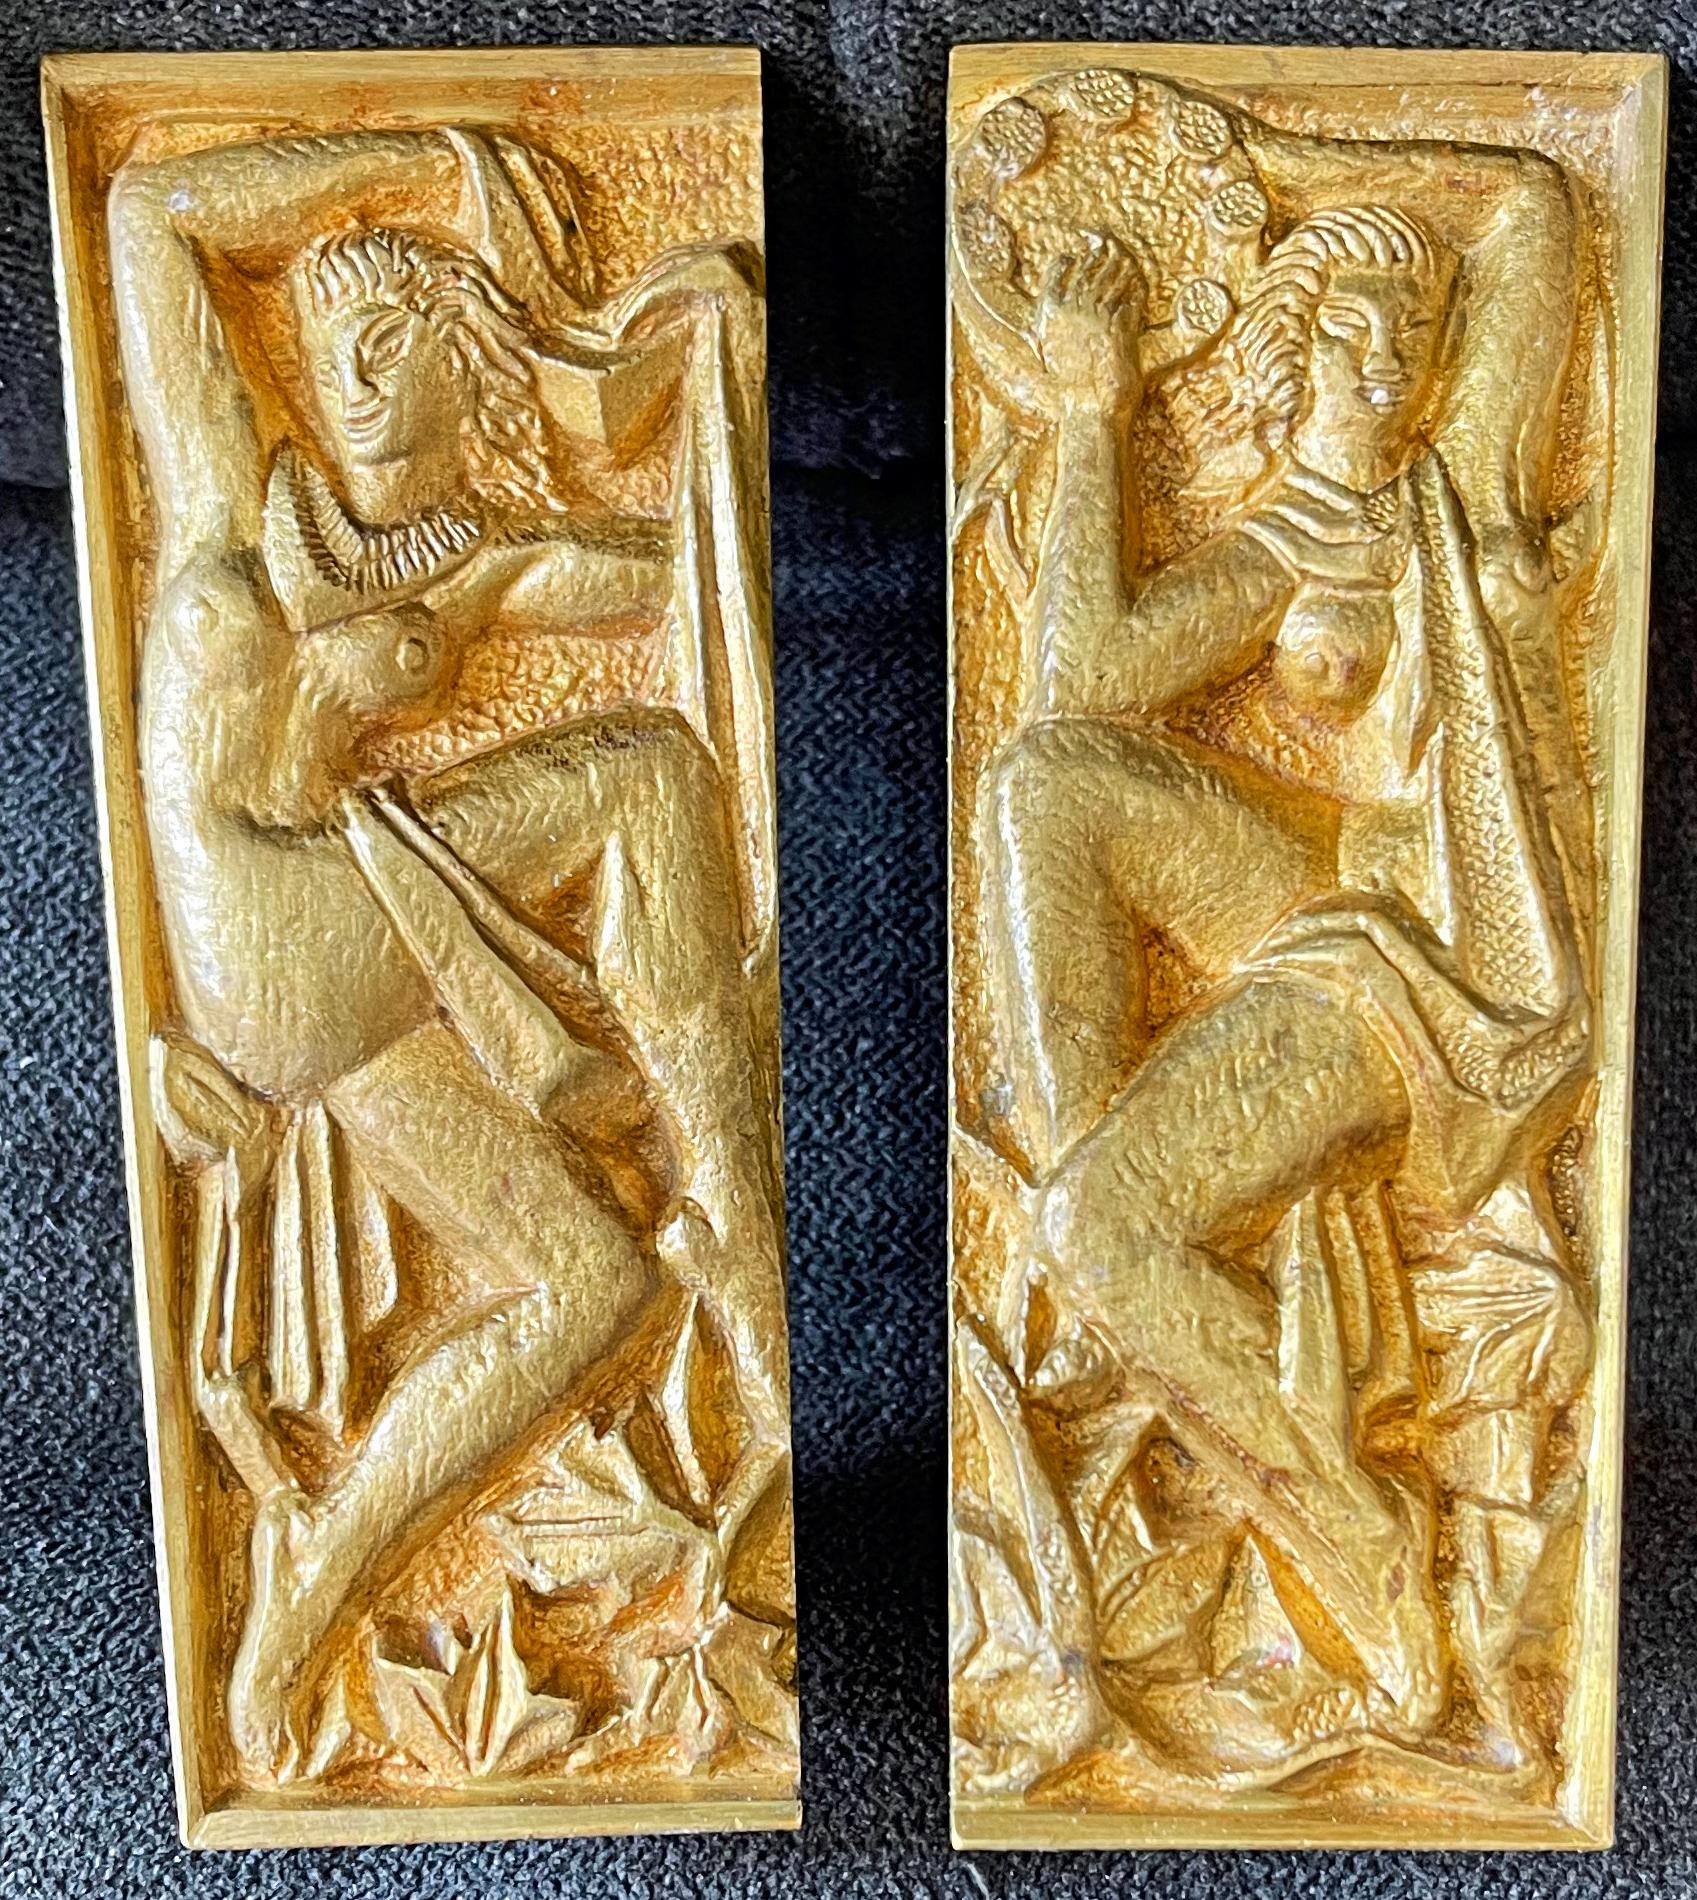 Fabuleuse et rare, cette paire de poignées de porte en bronze doré représente deux joyeuses figures féminines nues, l'une dansant et l'autre jouant du tambourin. Bien que le sculpteur ne soit pas connu, ces objets représentent le meilleur de l'Art